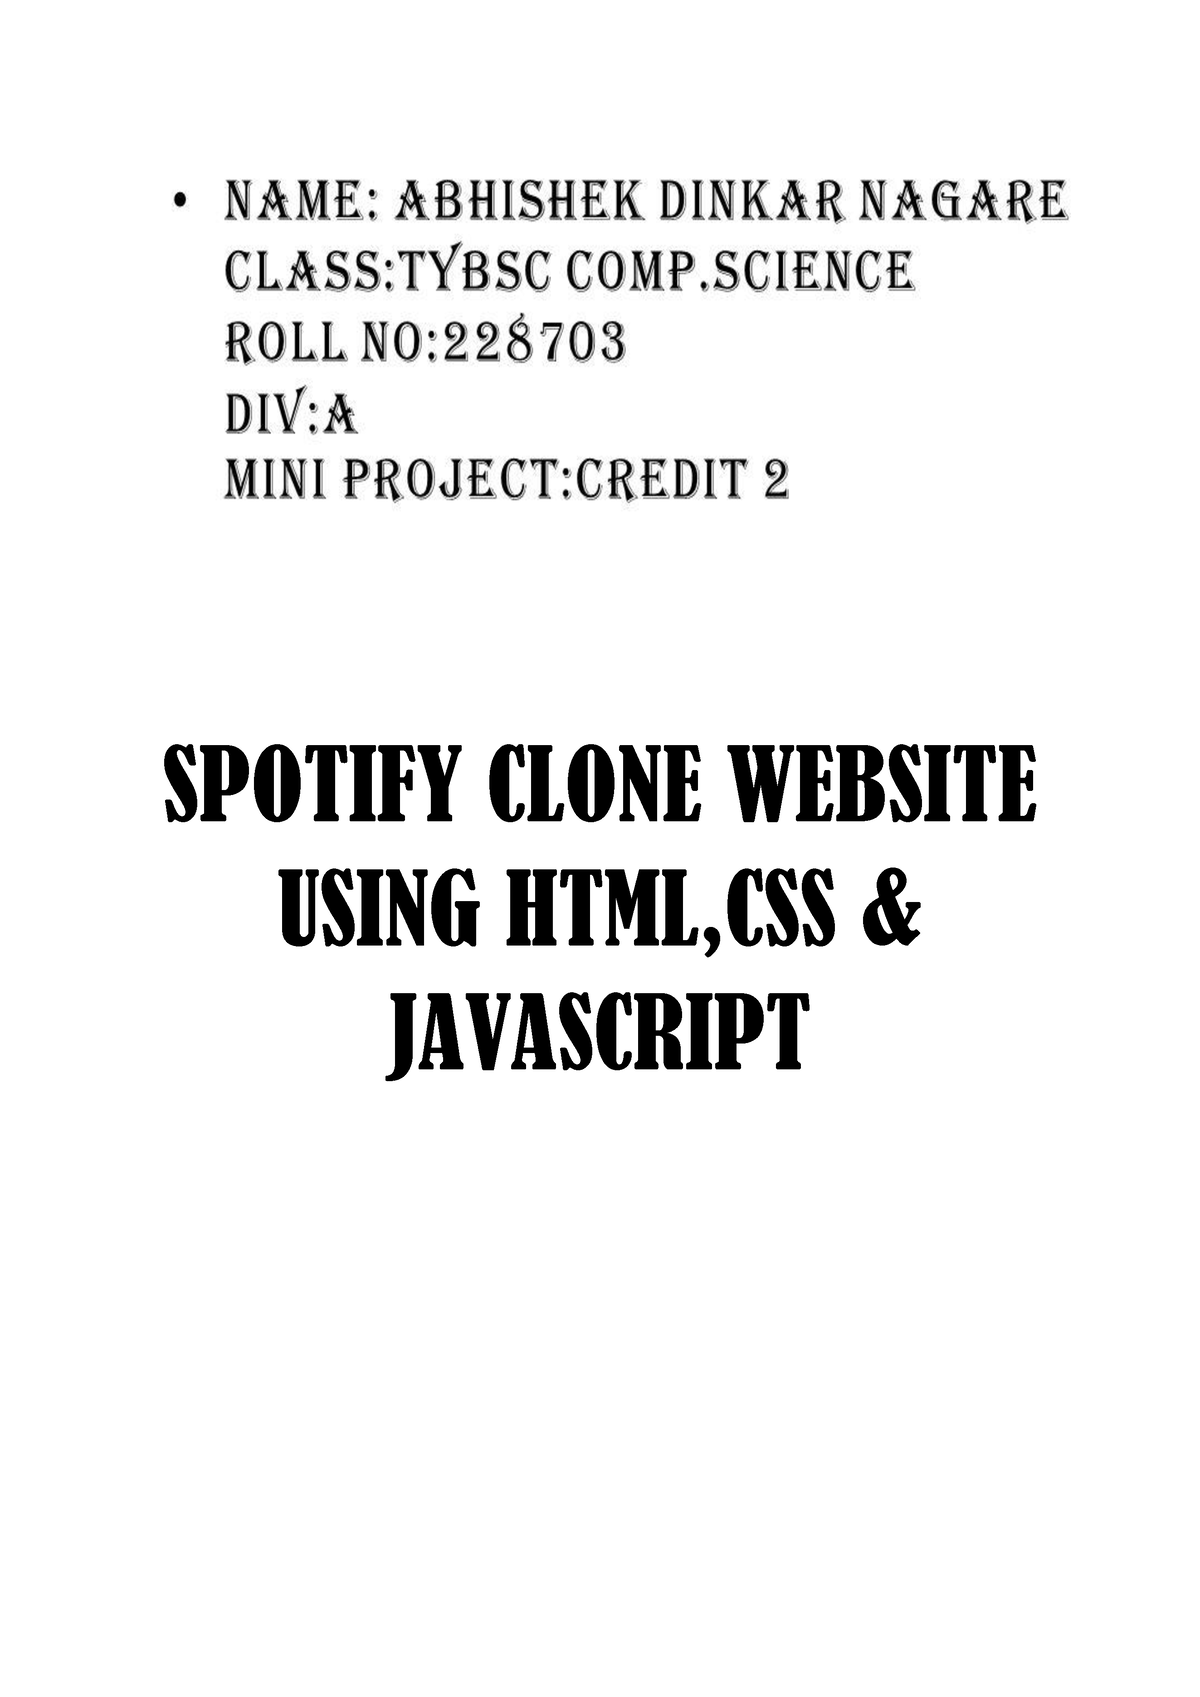 spotify clone research paper